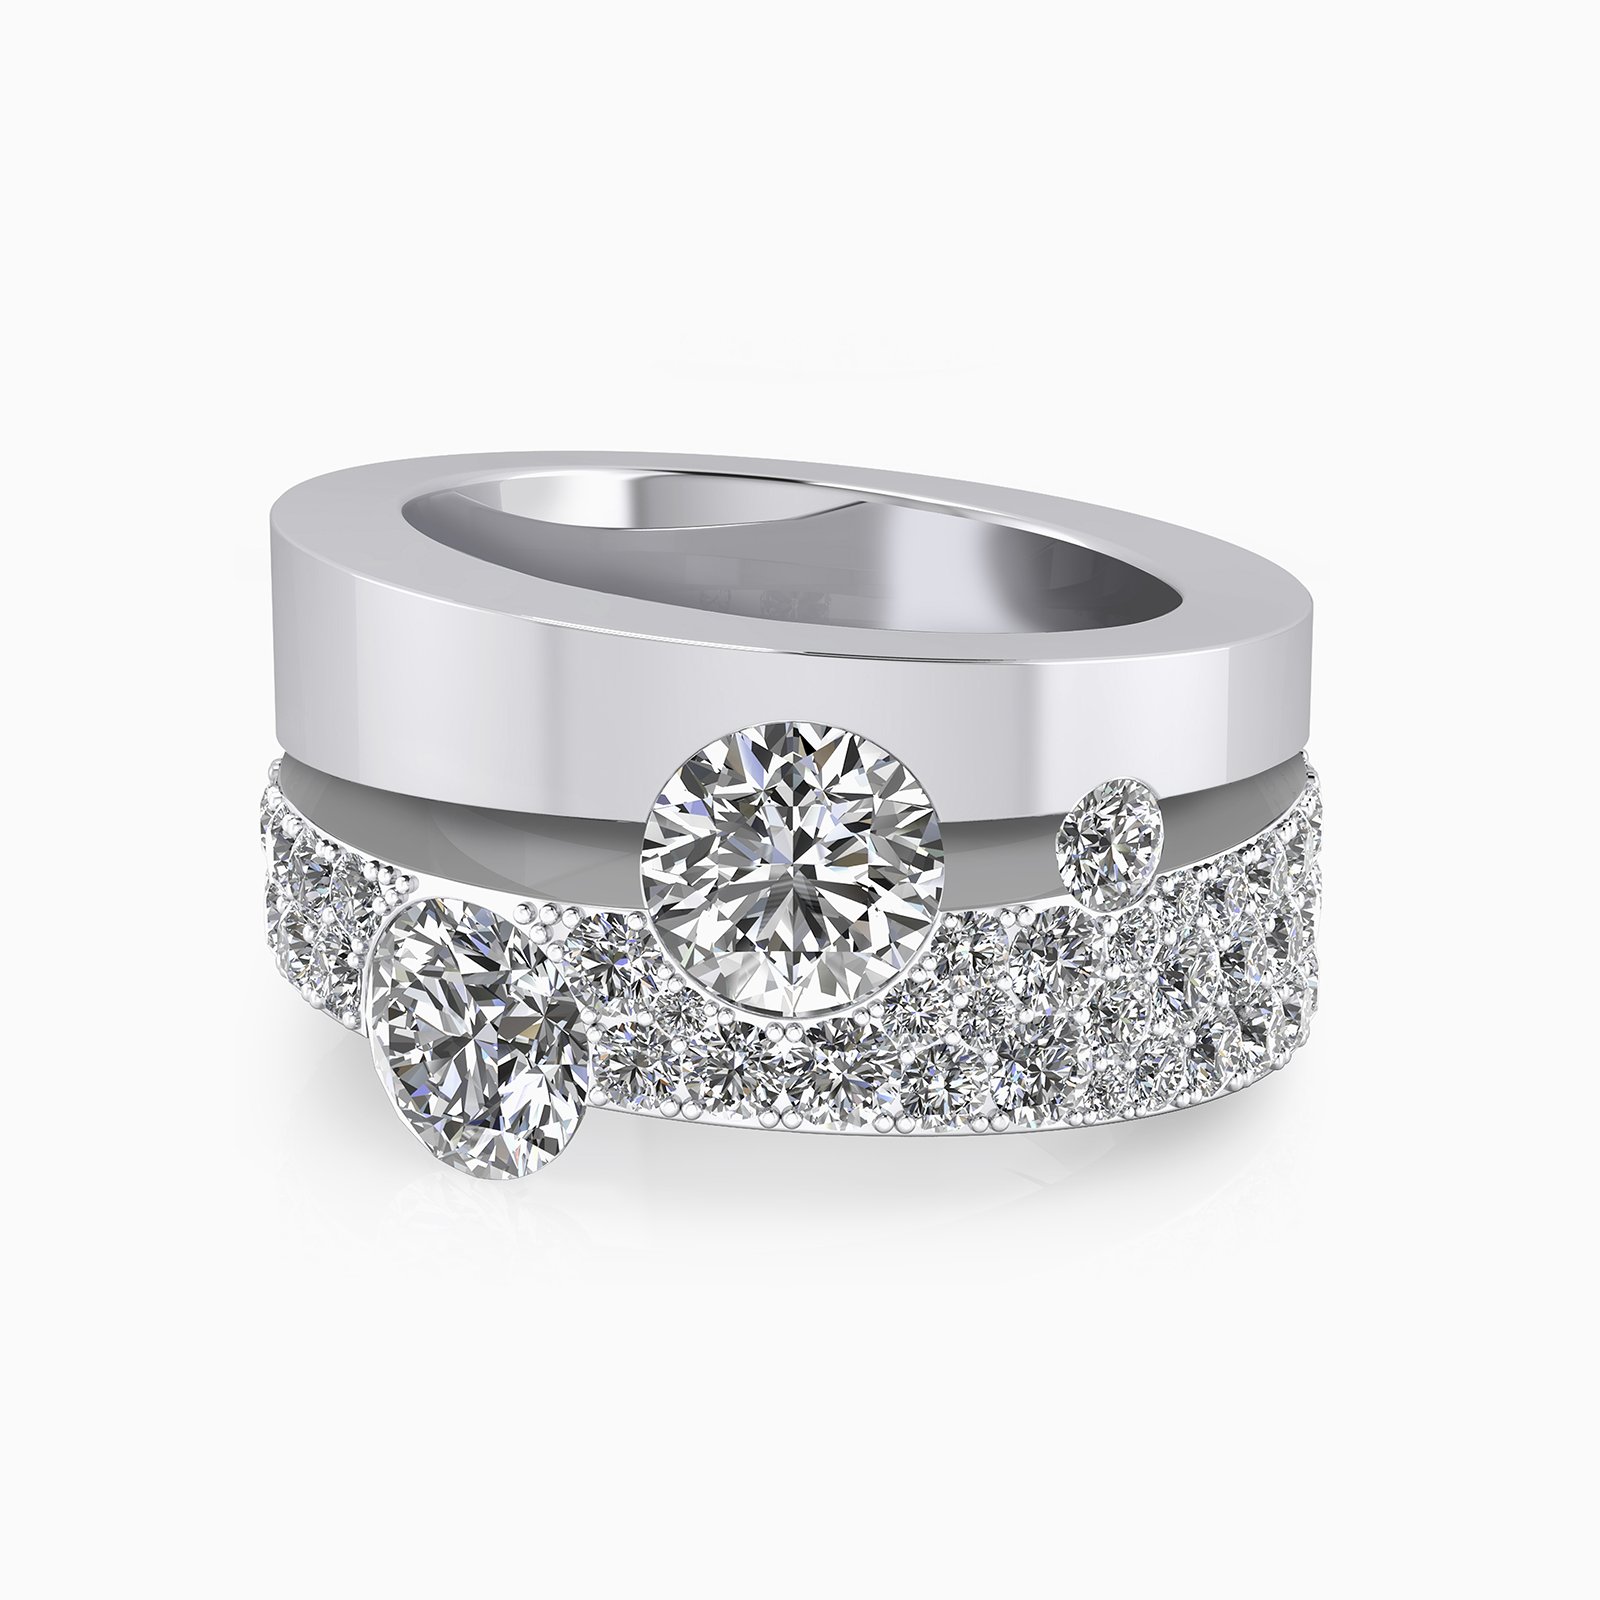 Anell seleccionat per la promoció d'anells de compromís de Clemència Peris, en la campanya de nadal pel dia d'acció de gràcies